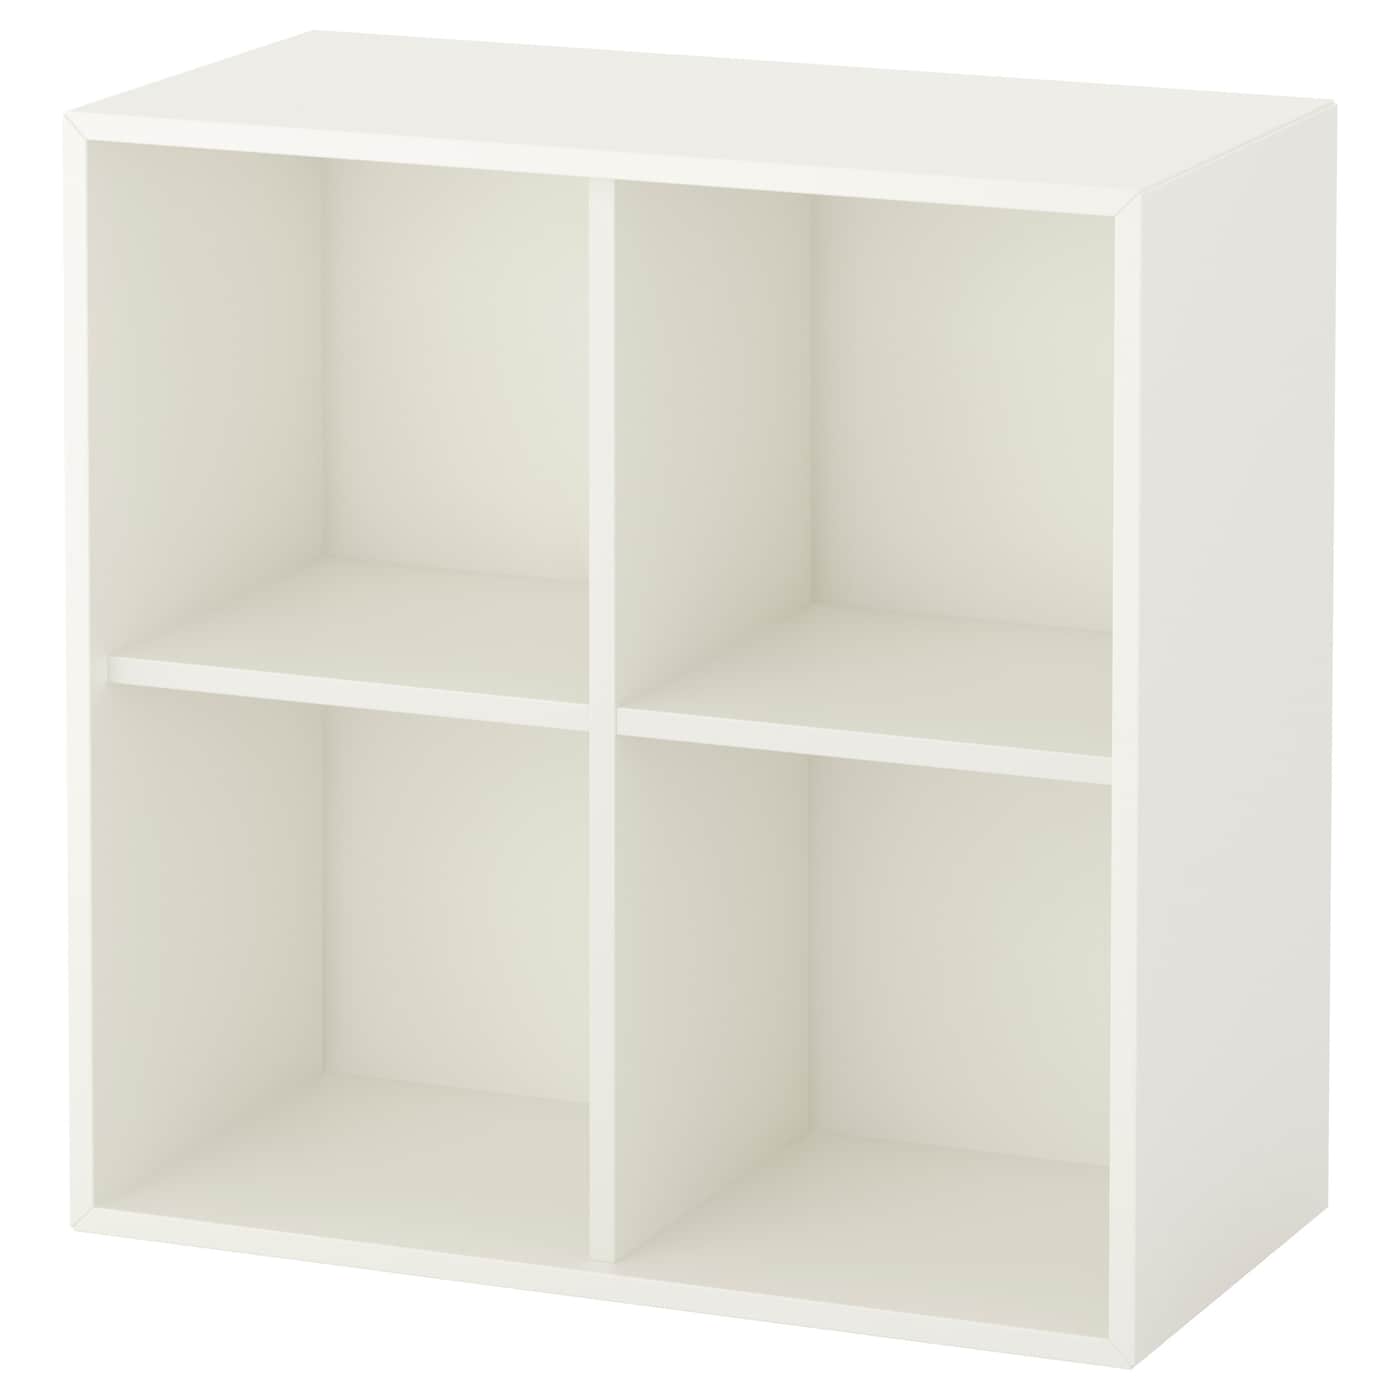 Настенный стеллаж - IKEA EKET, белый, 70x35x70 см, ЭКЕТ ИКЕА